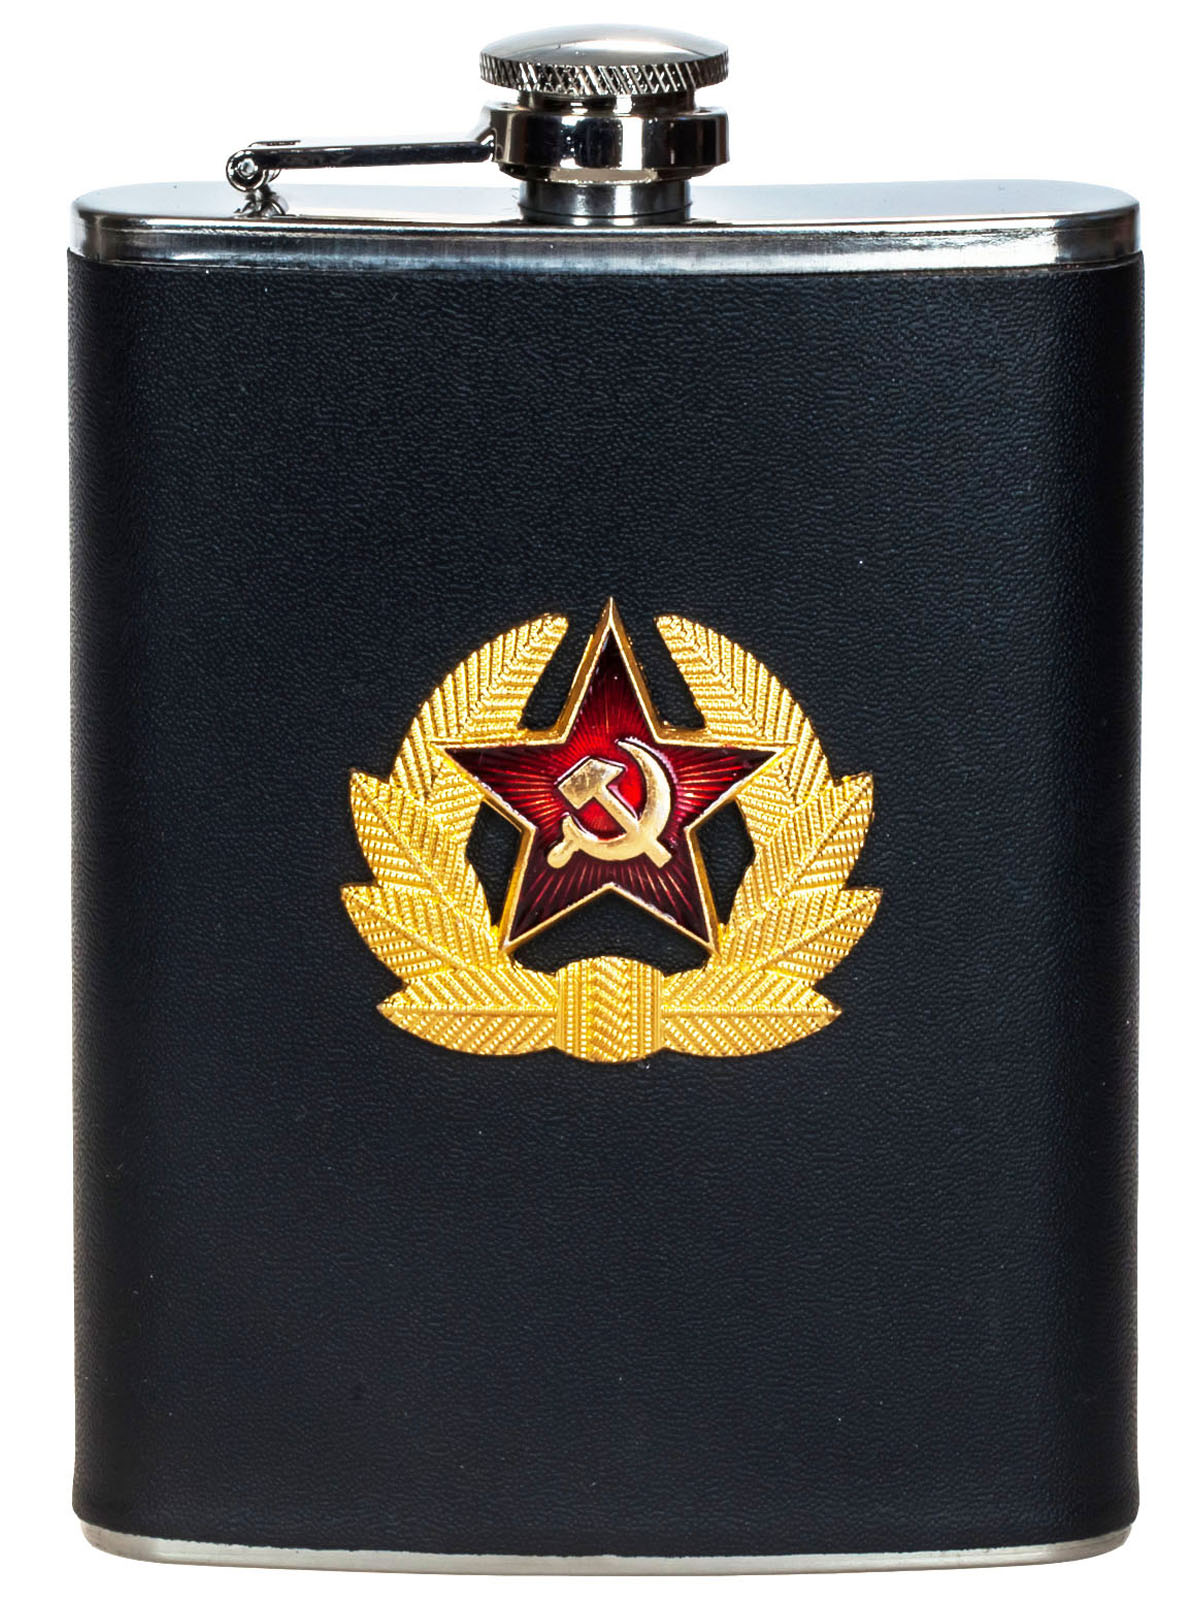 Купить фляжку "Советская Армия" недорого